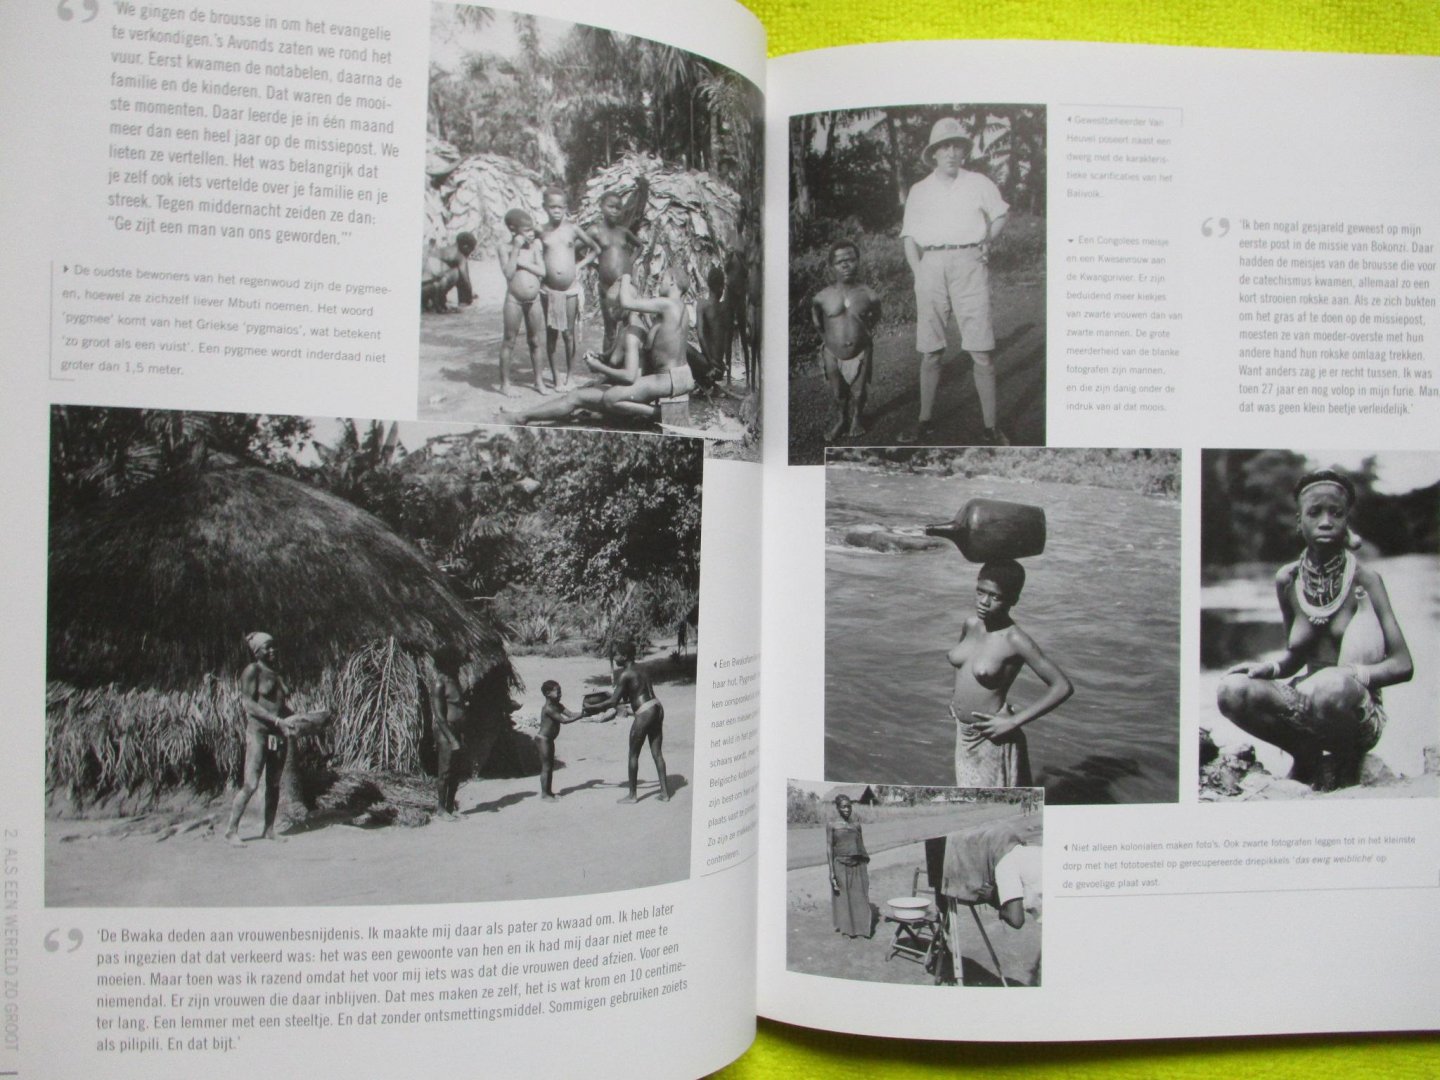 Raymaekers, Jan - Congo. De schoonste tijd van mijn leven. Getuigenissen van oud-kolonialen in woord en beeld.